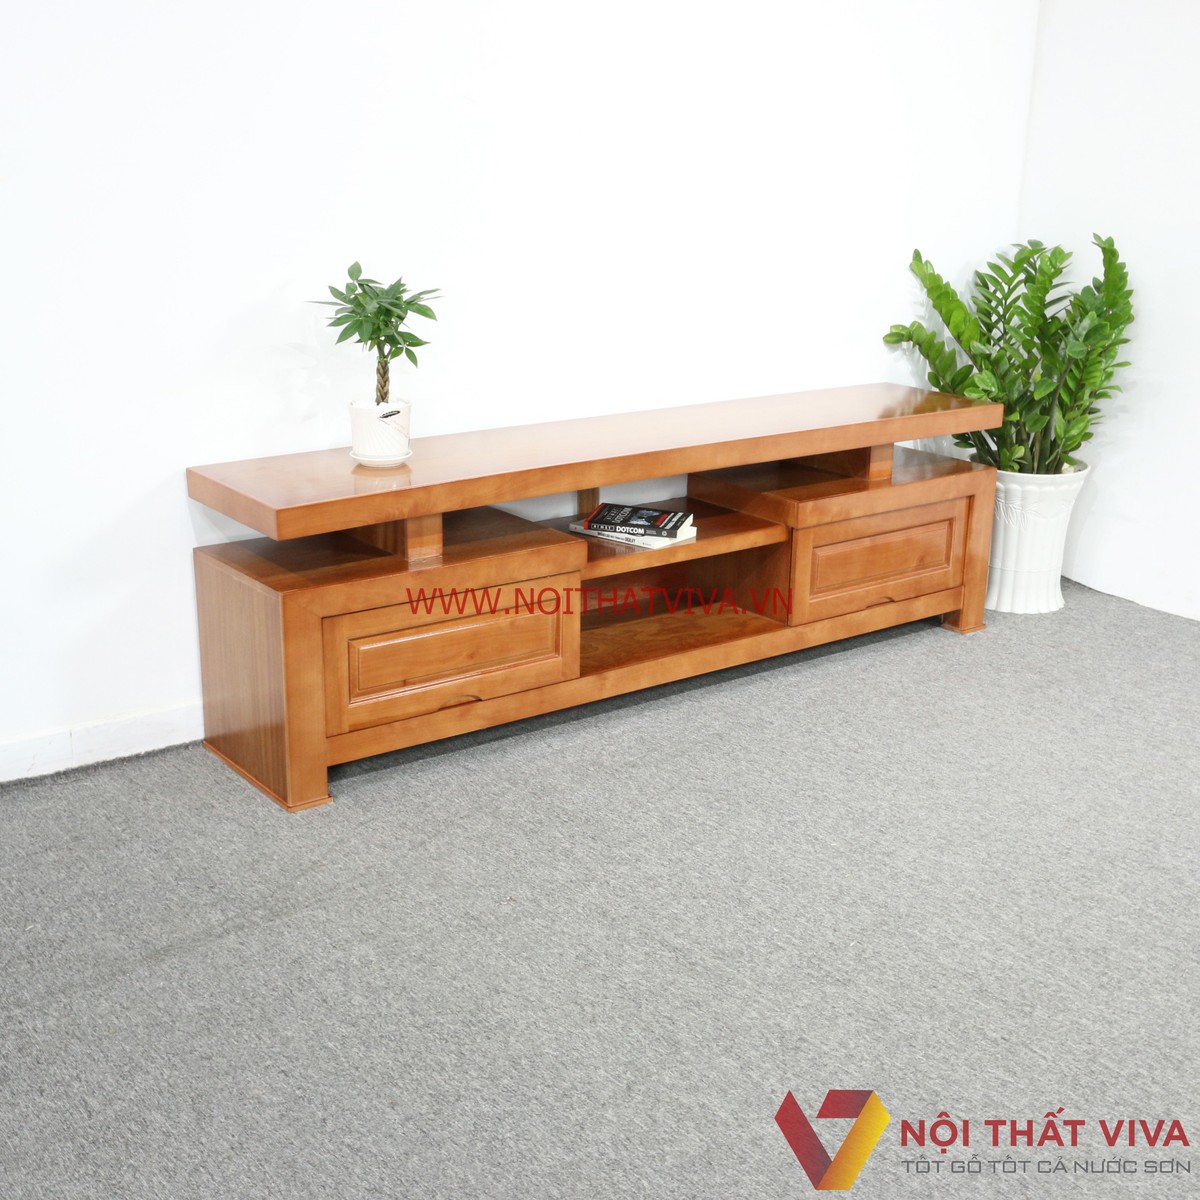 Kệ TiVi gỗ tự nhiên hiện đại: Năm 2024, những ngôi nhà hiện đại tại Việt Nam thường sử dụng các sản phẩm nội thất từ gỗ tự nhiên. Không chỉ đẹp mắt, chúng còn mang lại cho không gian sống của bạn sự sang trọng và hoàn hảo. Một trong những sản phẩm nổi bật đó chính là kệ TiVi gỗ tự nhiên hiện đại. Với thiết kế tinh tế và chất liệu đẹp mắt, chúng sẽ là sản phẩm lý tưởng cho căn phòng của bạn.